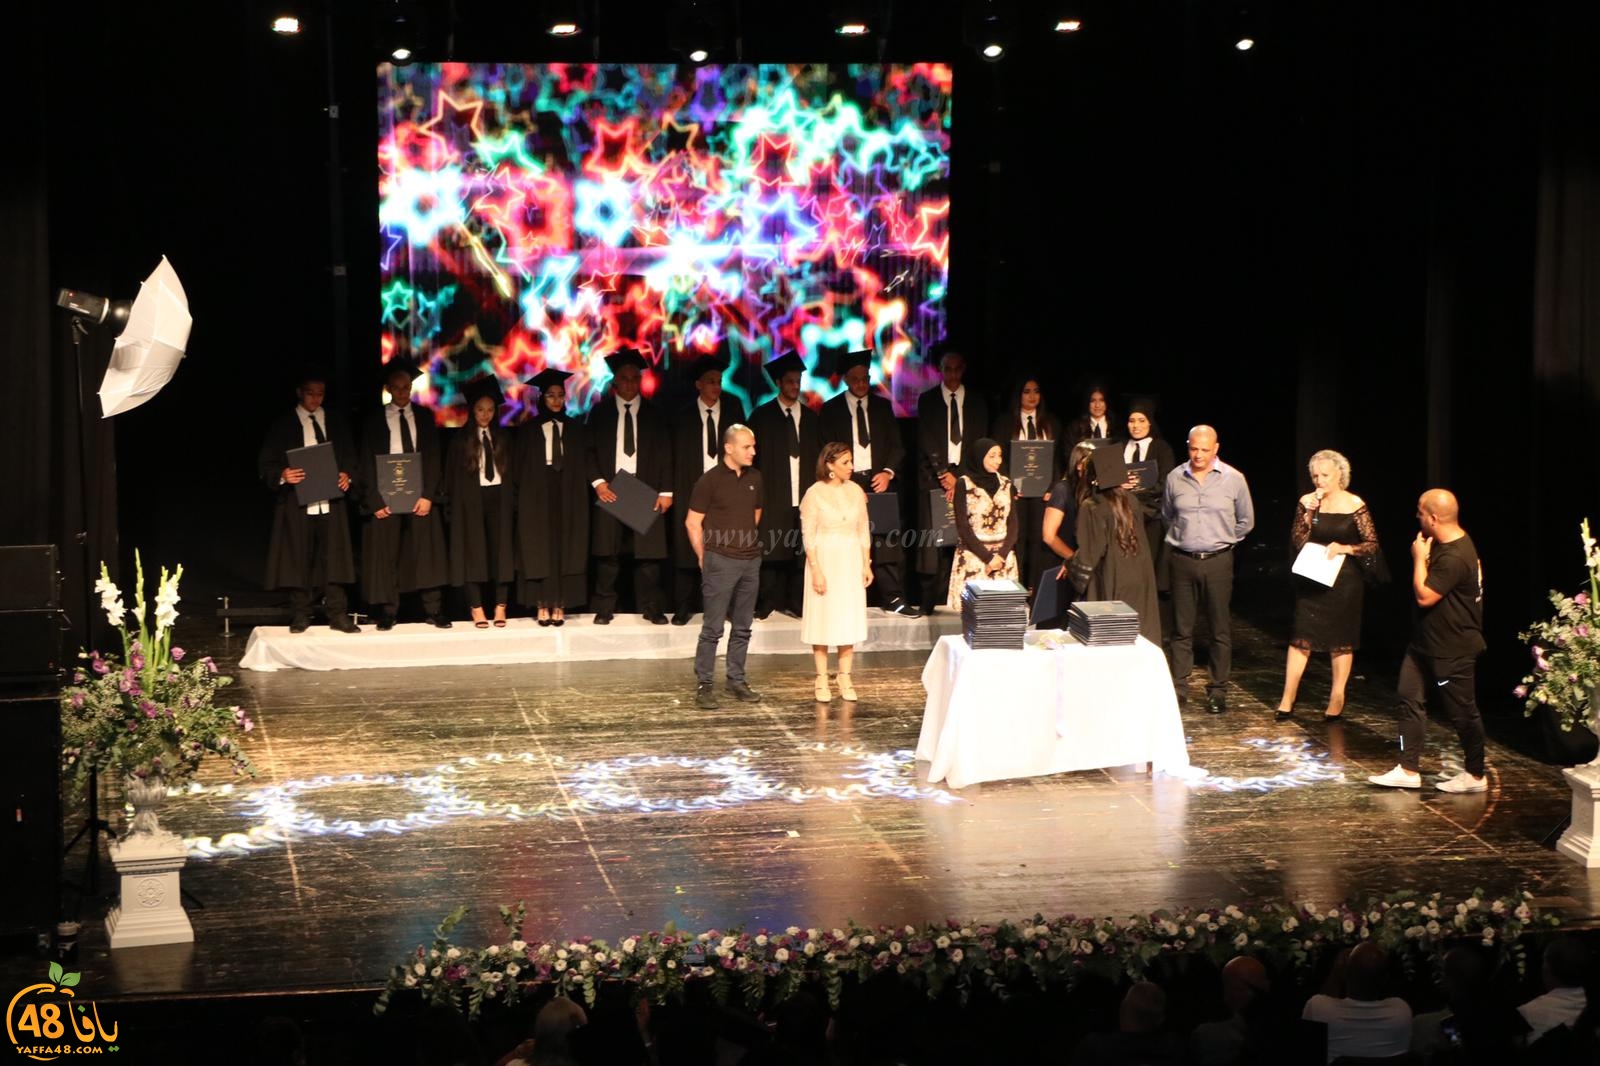 بالصور: مدرسة أجيال الثانوية بيافا تحتفل بتخريج 52 طالب وطالبة ضمن فوجها الـ12 